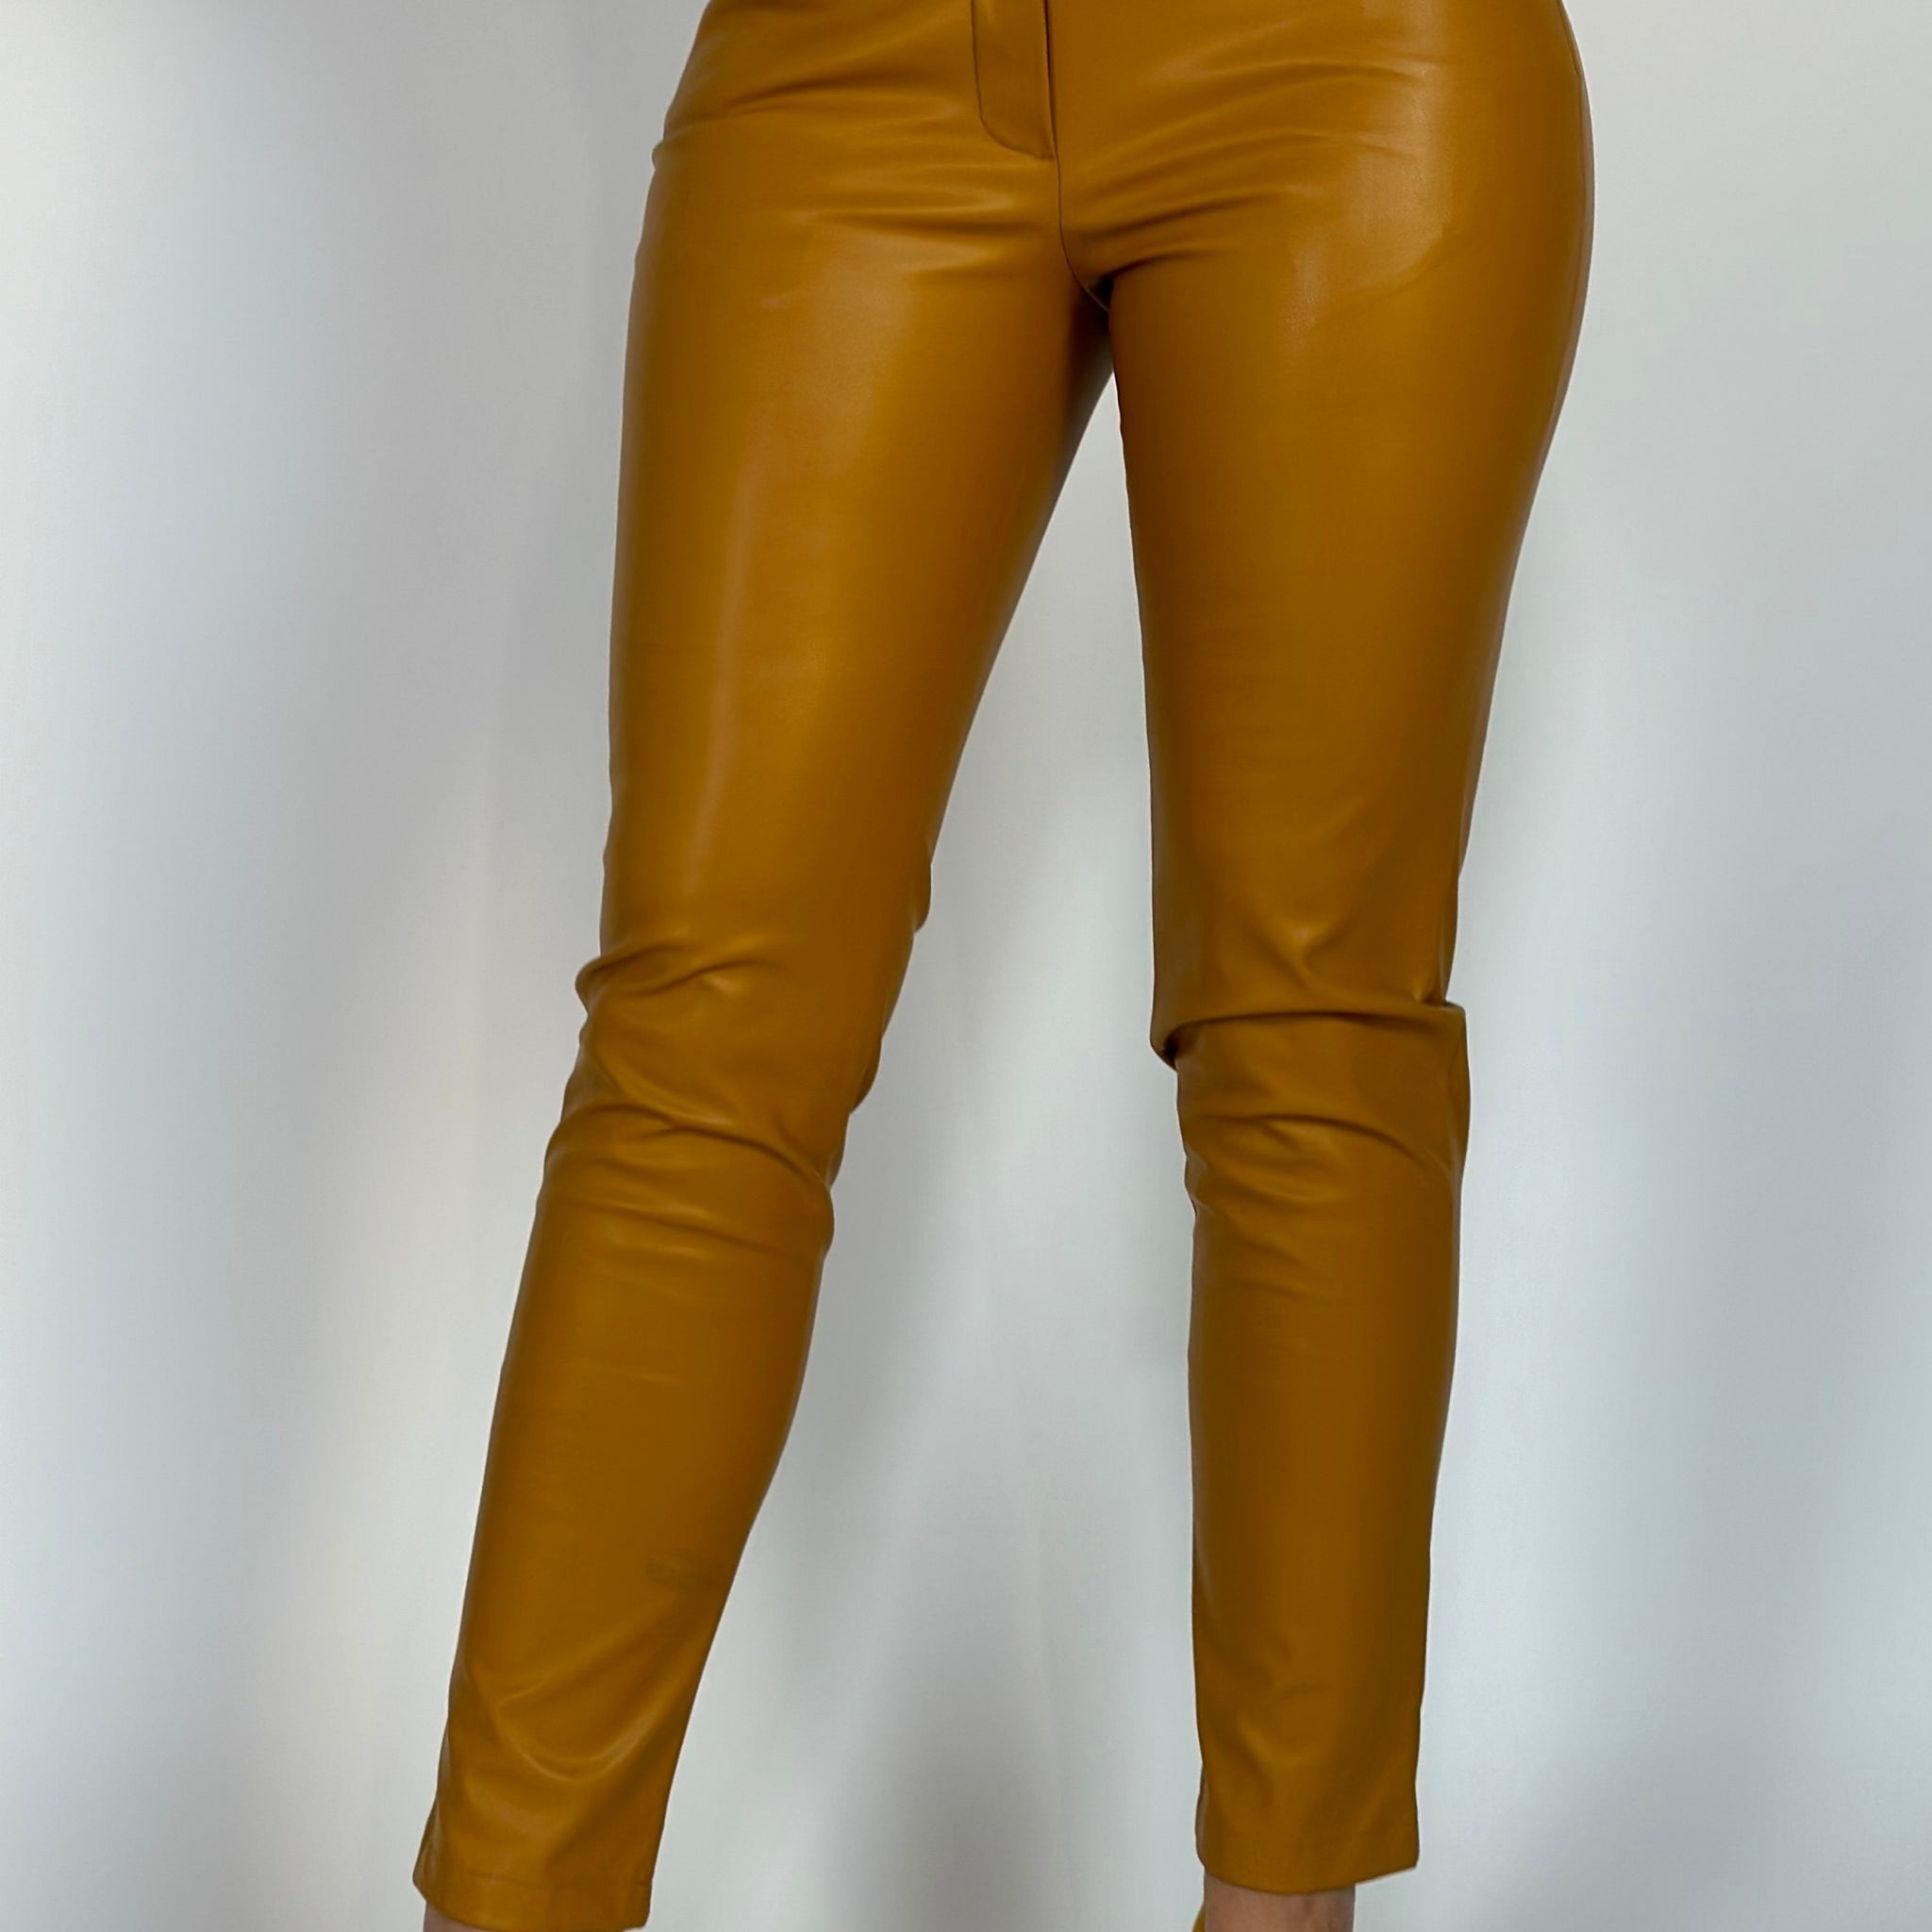 Pantaloni fashion cu talie inalta model skinny din piele ecologica V649-16